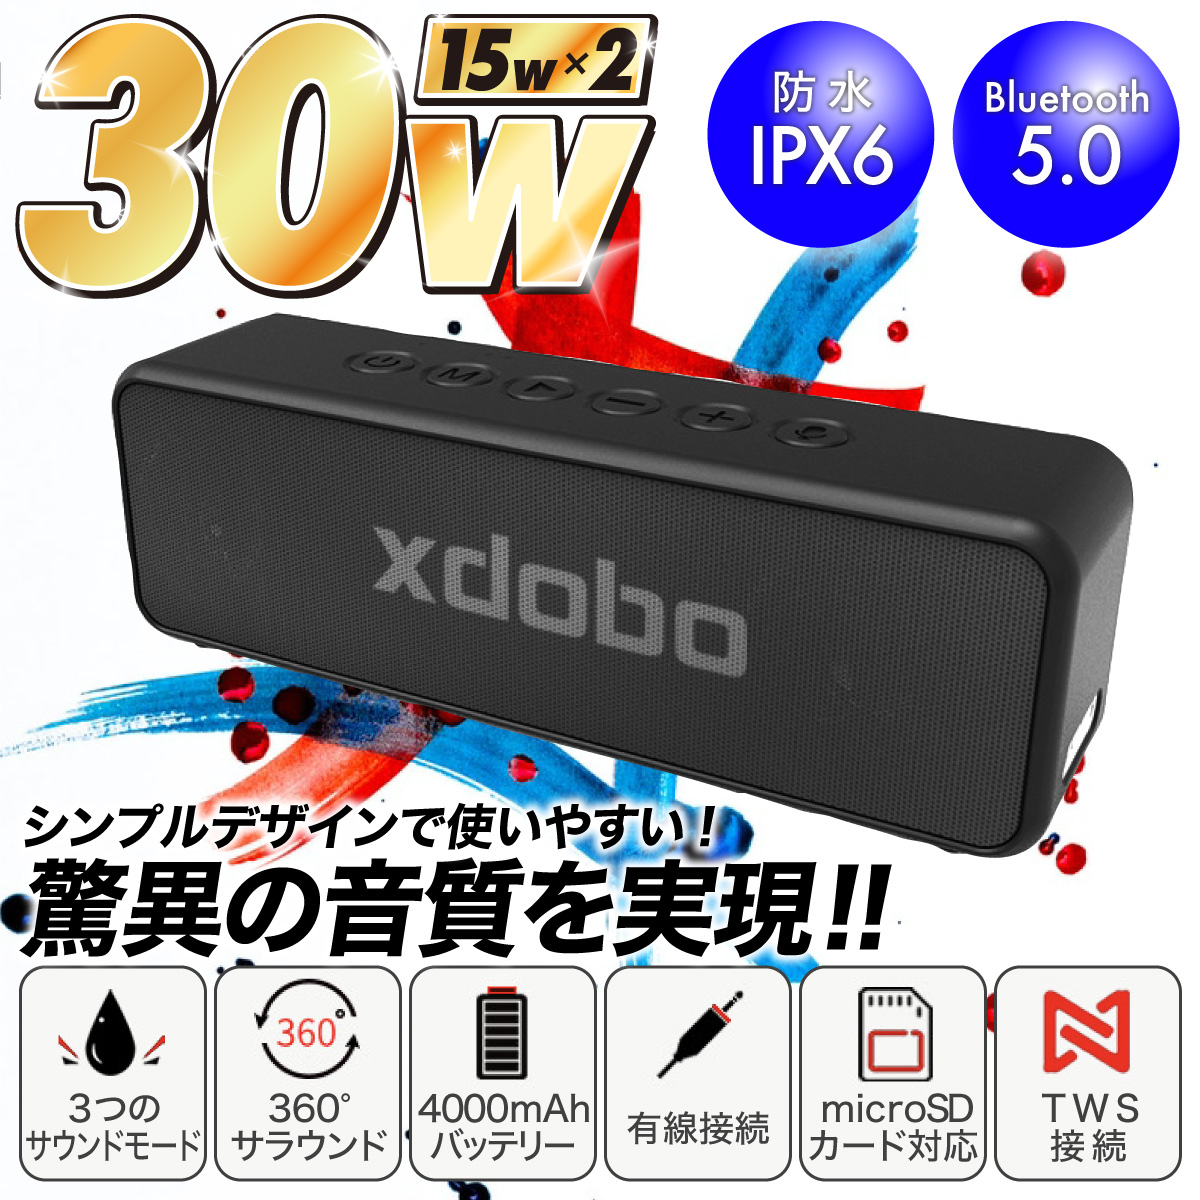 スピーカー Bluetooth ブルートゥーススピーカー ワイヤレス スピーカー テレビスピーカー ポータブルスピーカー 高音質 防水 スマホスピーカー  風呂 :bt-sp01:SUNRISE market 通販 